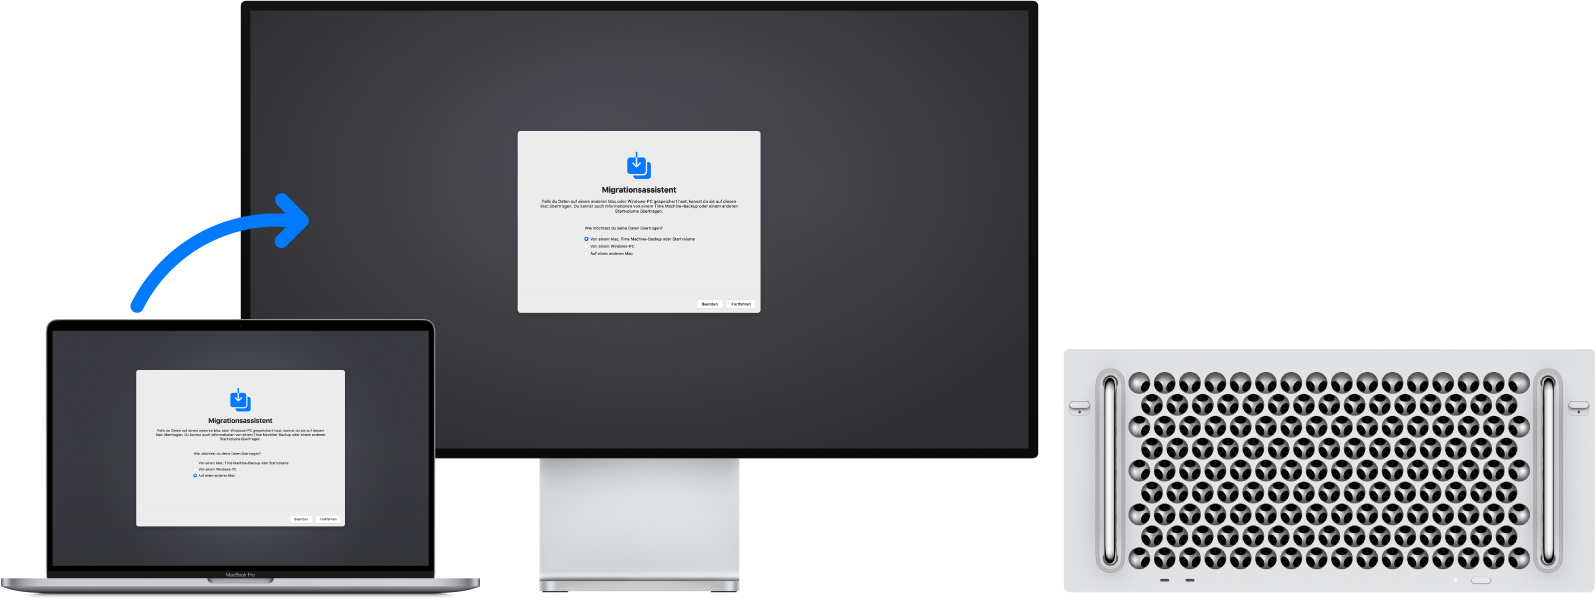 Auf einem MacBook Pro und einem Mac Pro ist der Bildschirm des Migrationsassistenten zu sehen. Ein Pfeil vom MacBook Pro zum Mac Pro symbolisiert die Datenübertragung von einem Gerät zum anderen.